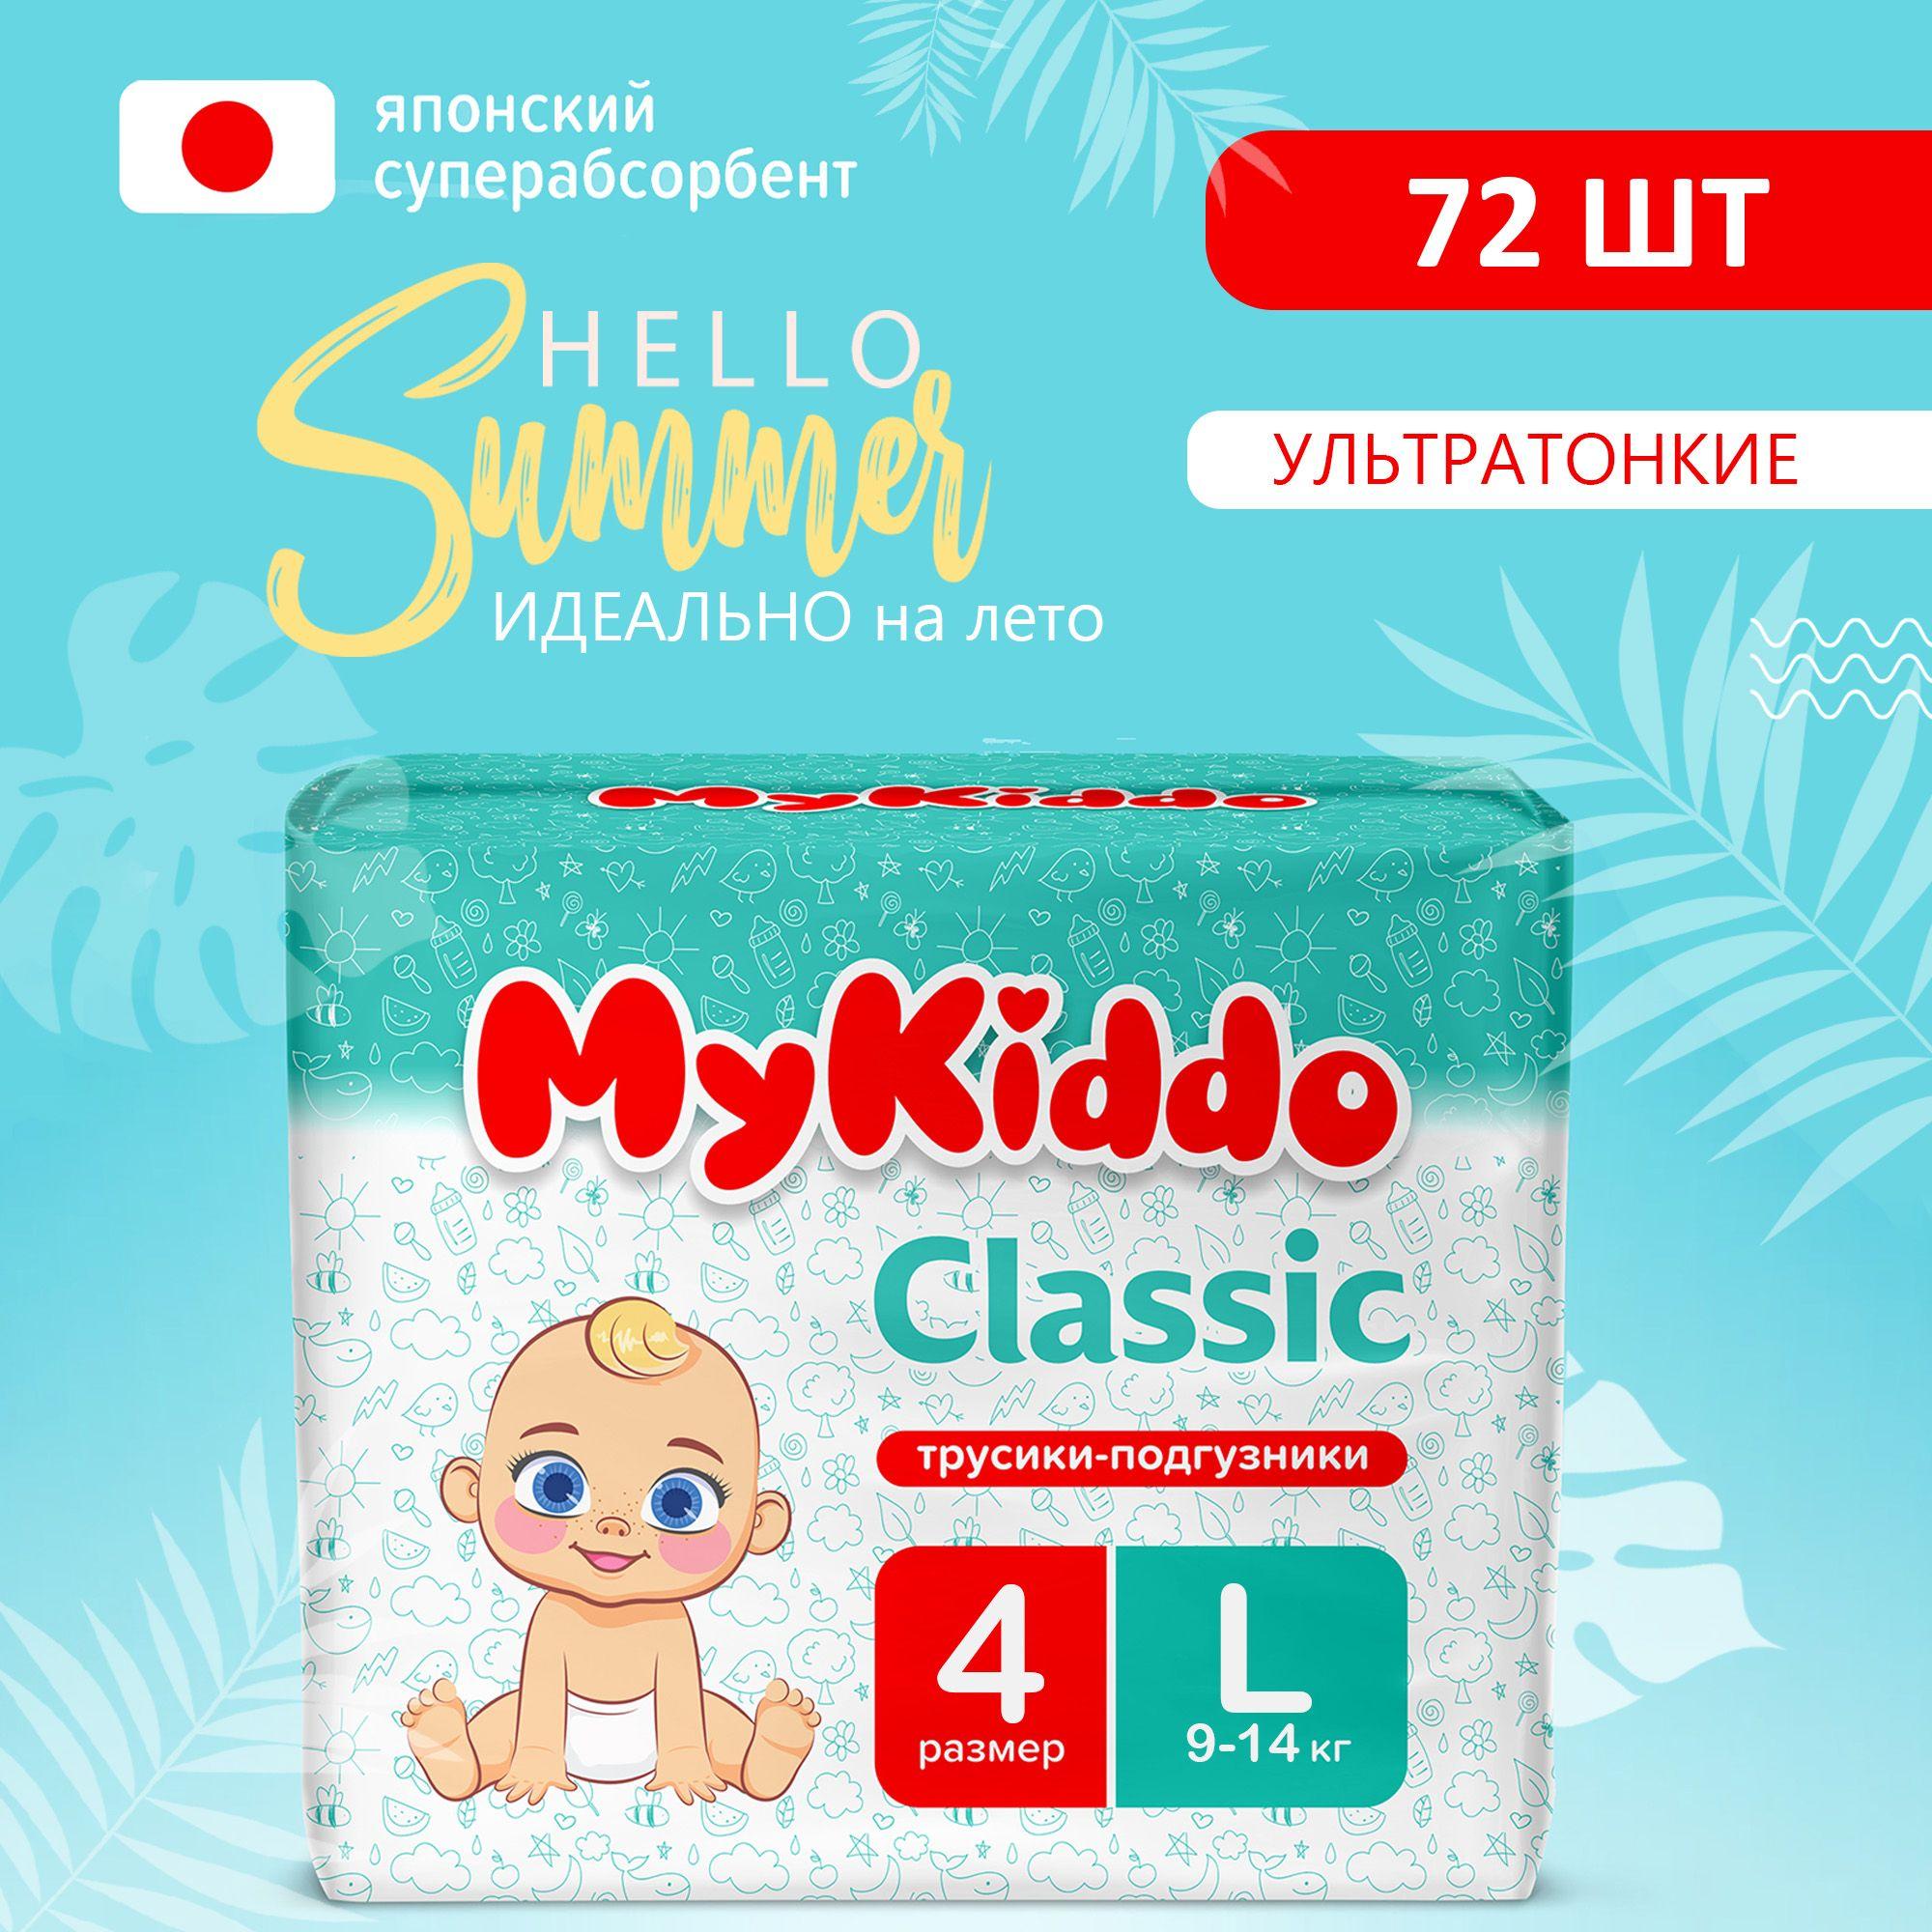 Подгузники трусики детские MyKiddo Classic размер 4 L, для детей весом 9-14 кг, 72 шт. (2 упаковки по 36 шт.) мегабокс